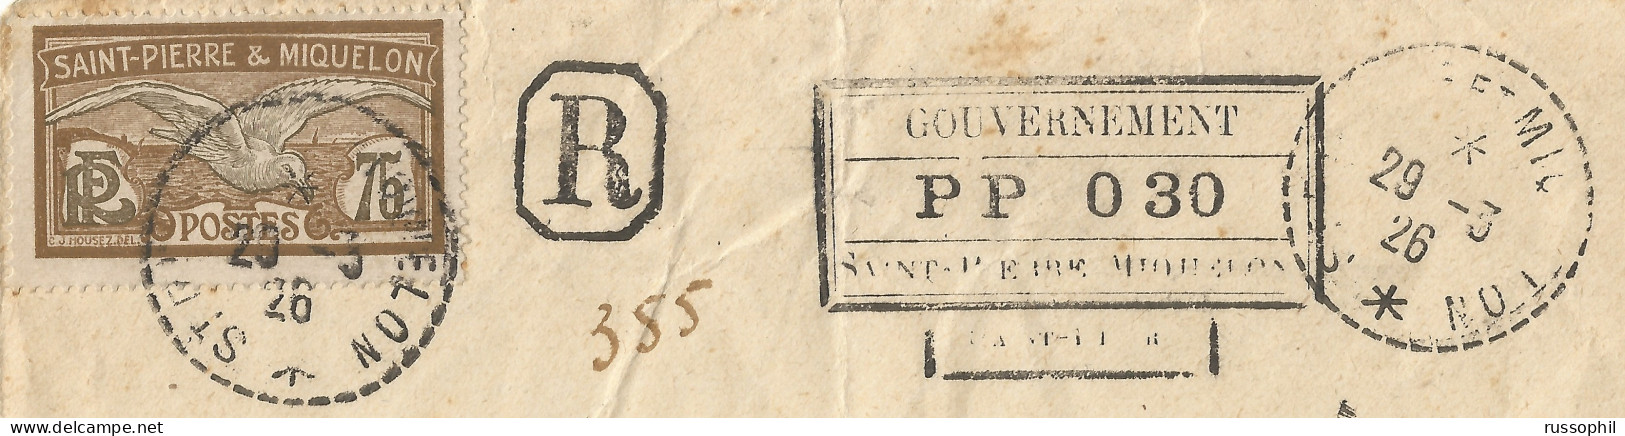 SAINT PIERRE ET MIQUELON - 30 CENT "PORT PAYE - POST PAID - PP" REGISTERED COVER TO FRANCE - 1926  - Lettres & Documents